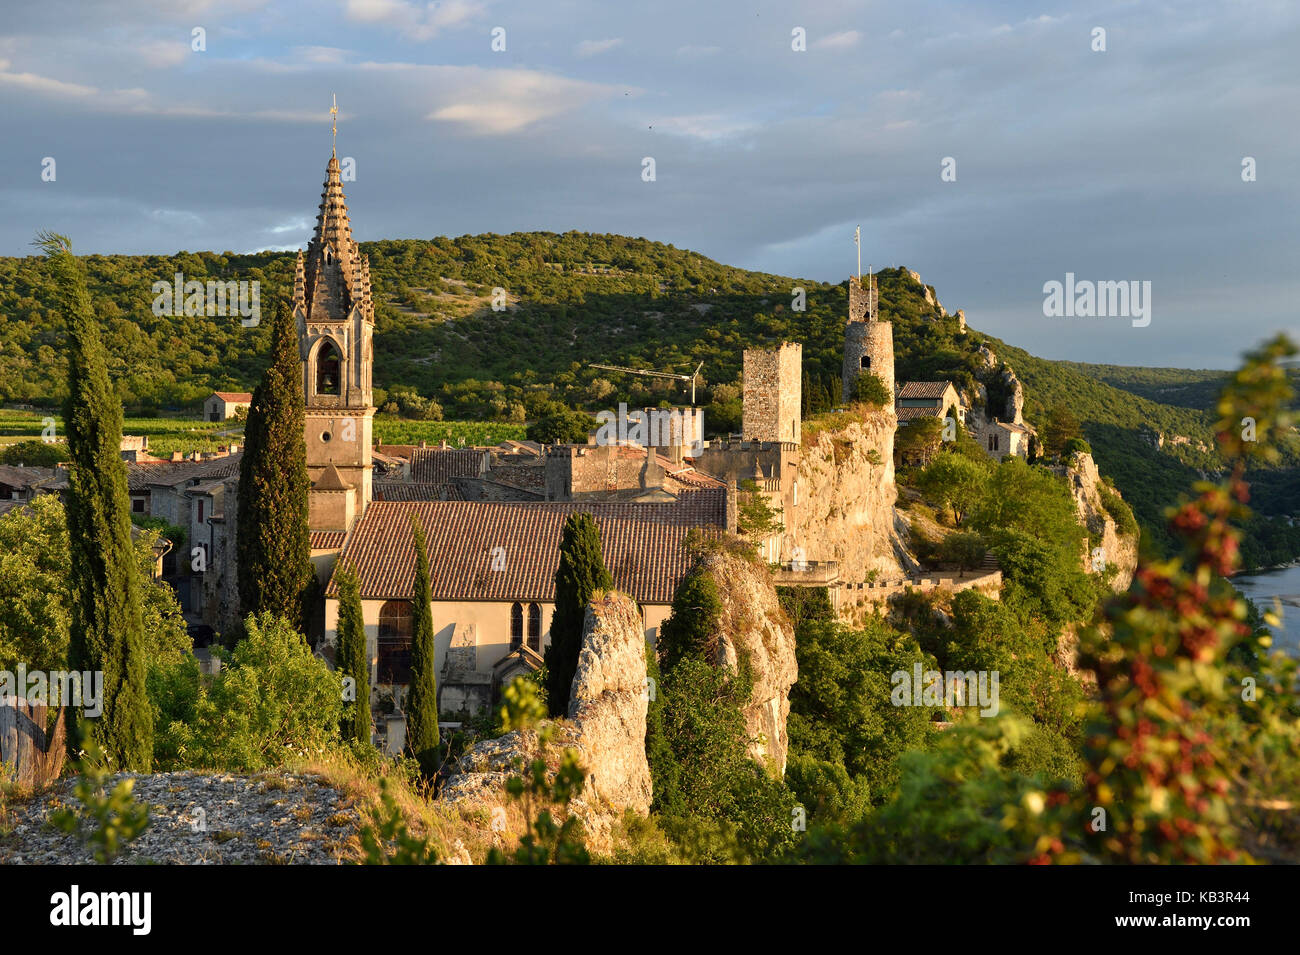 France, Gard, Aigueze, labelled Les Plus Beaux Villages de France (The Most Beautiful Villages of France), Medieval village perched above the Ardeche river Stock Photo